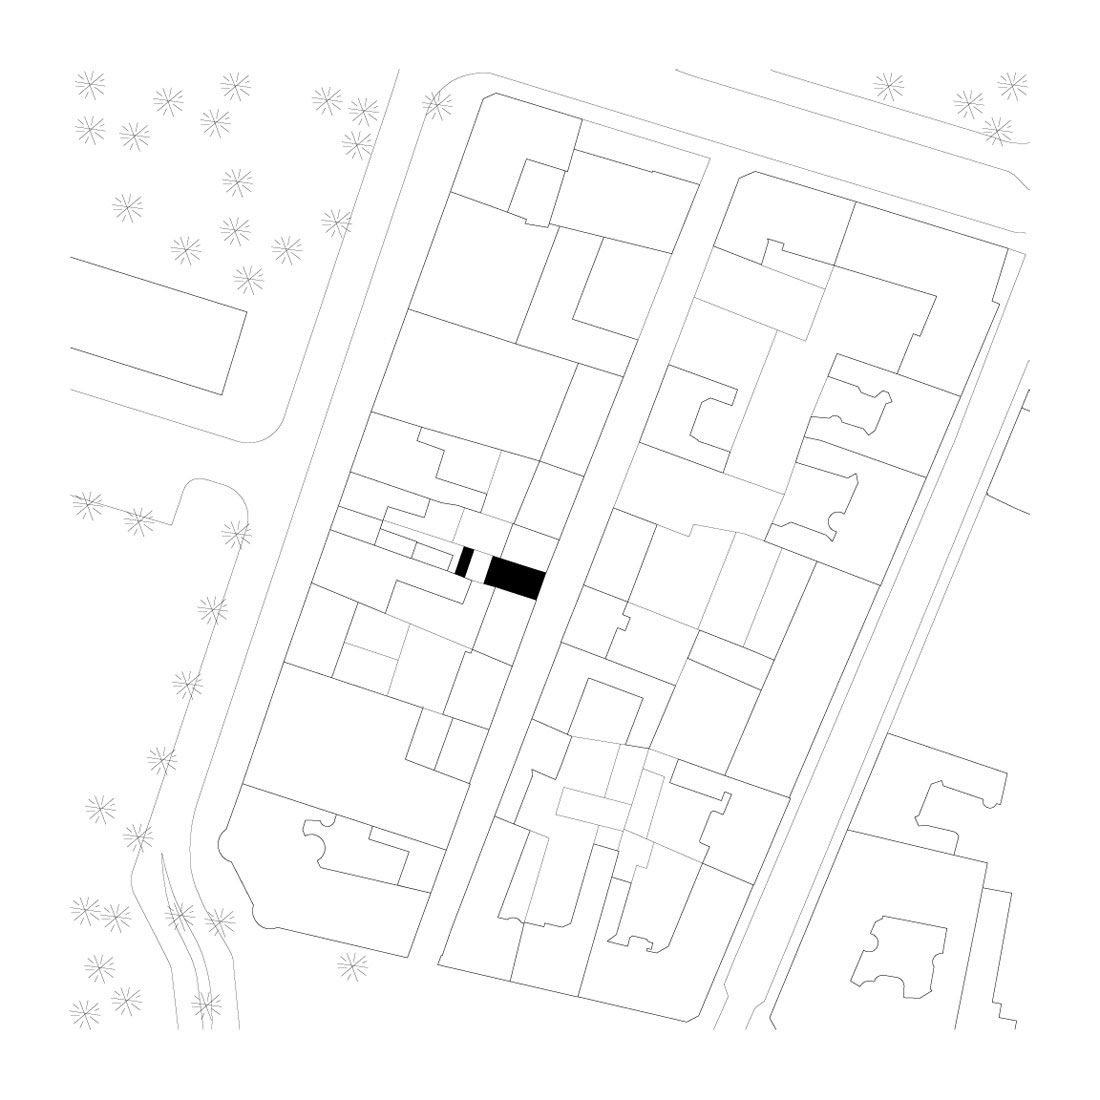 Townhouse-in-Landskrona-25